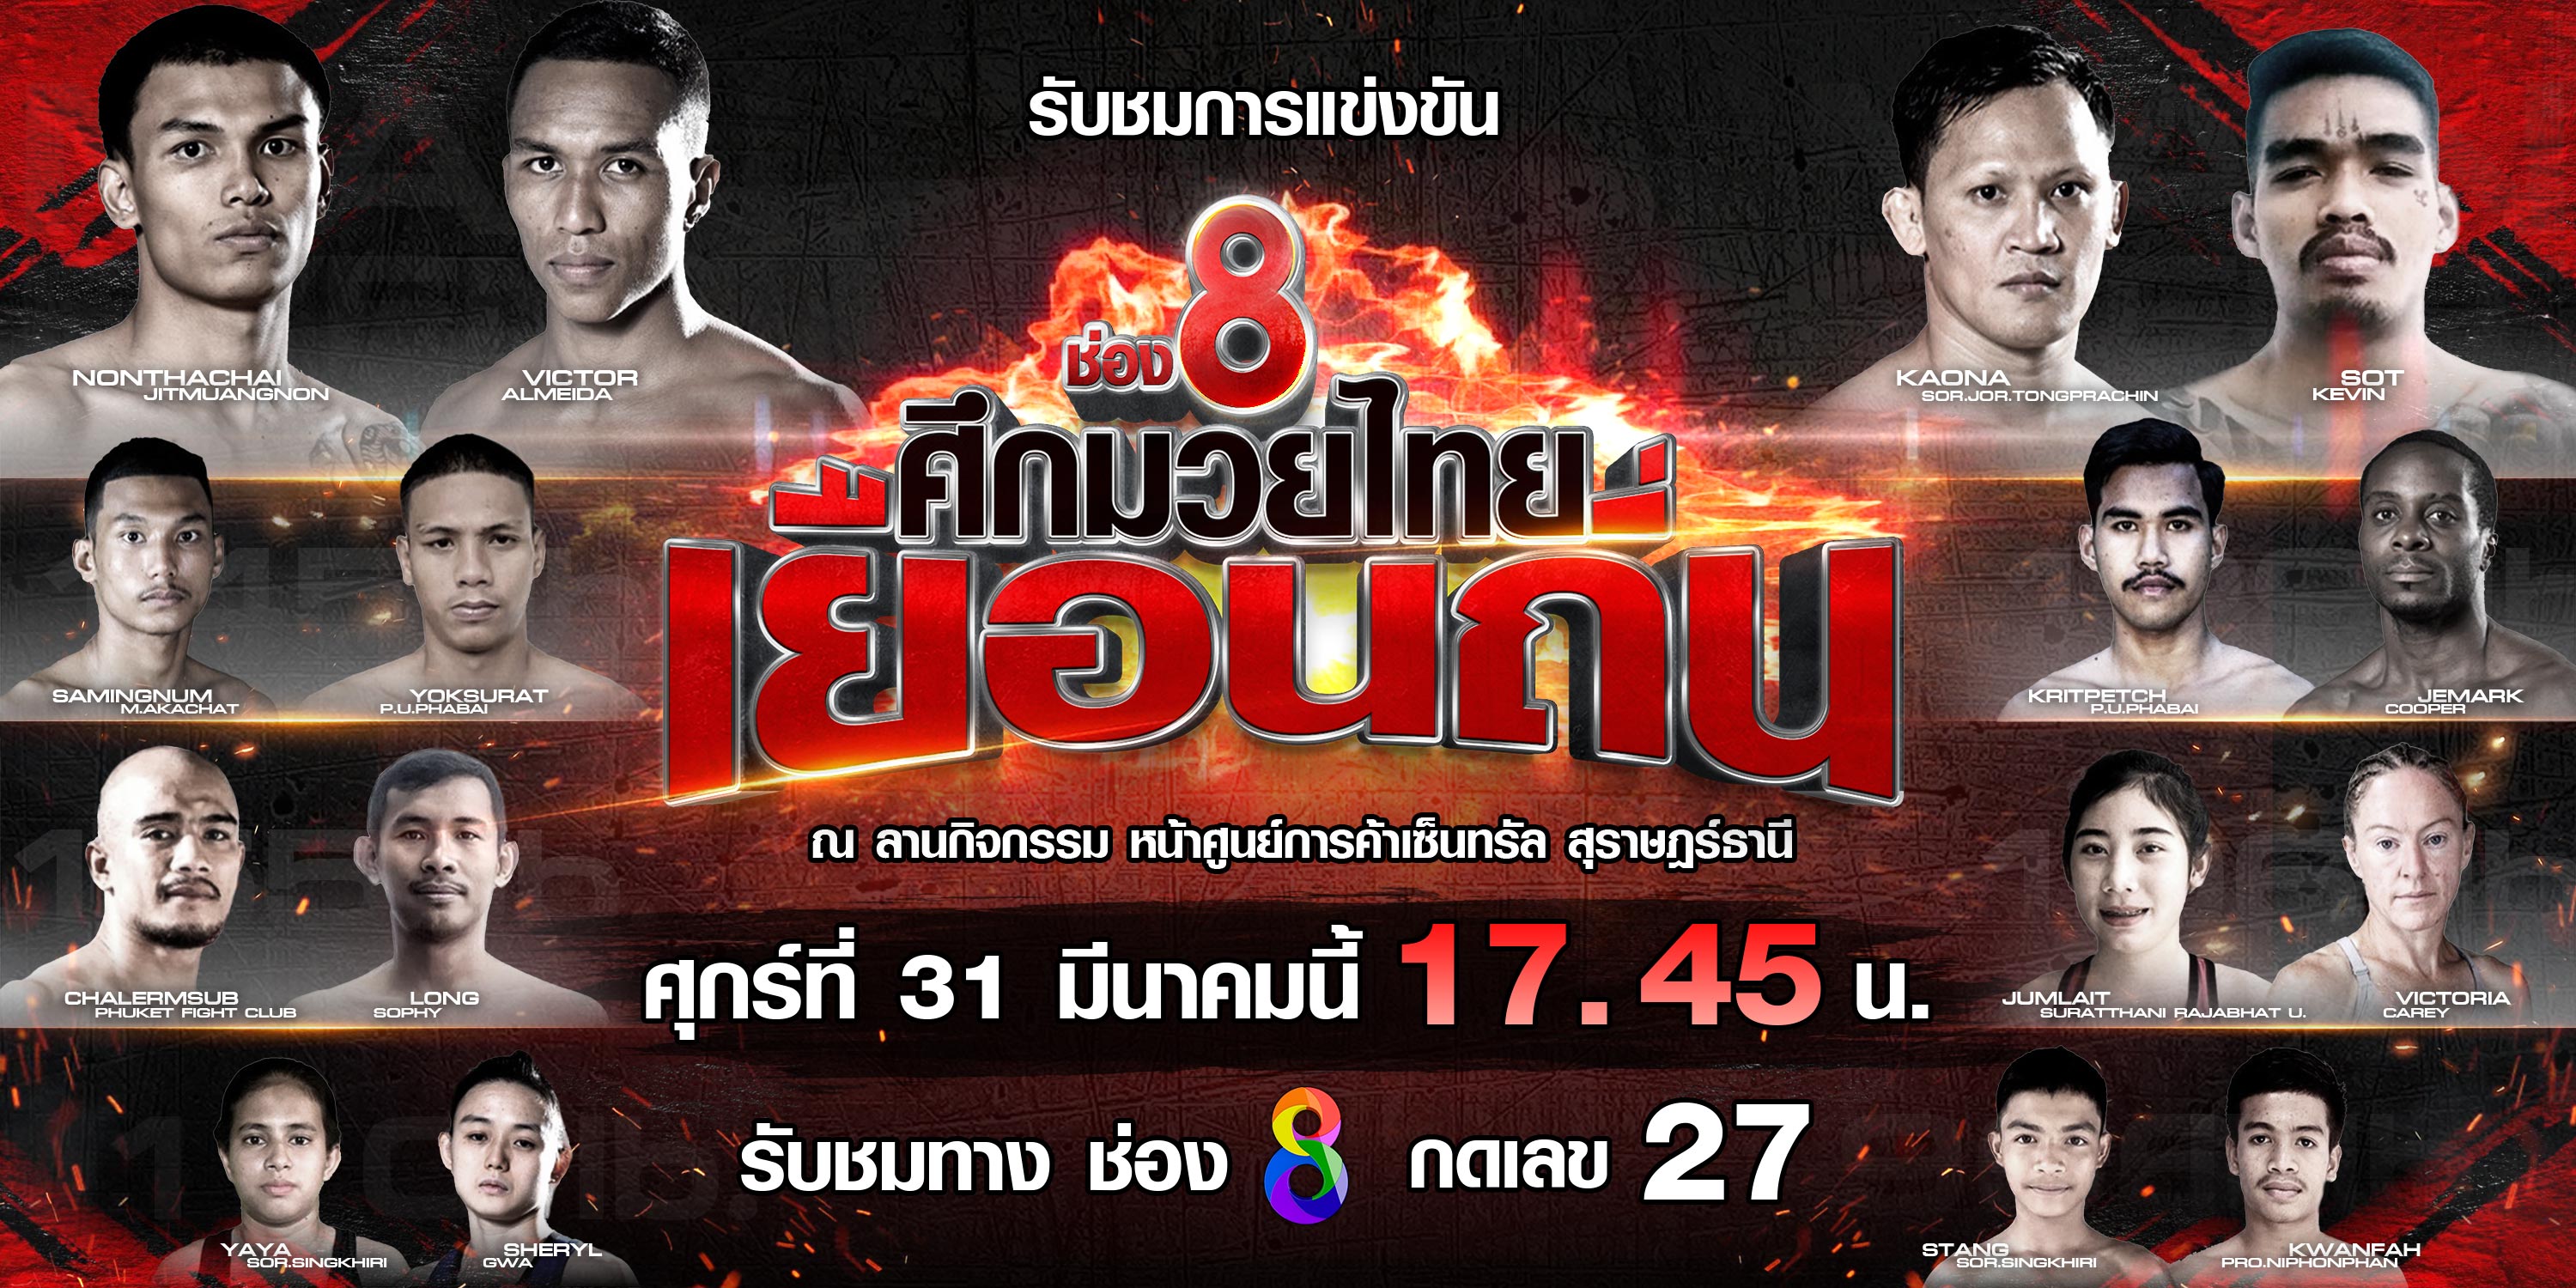 ช่อง 8 ผุดรายการพิเศษ “ศึกมวยไทยเยือนถิ่น”   ยกคู่เดือดฟอร์มแรง มวยดังจากช่อง8 ปะทะมวยท้องถิ่นทั่วประเทศไทย 